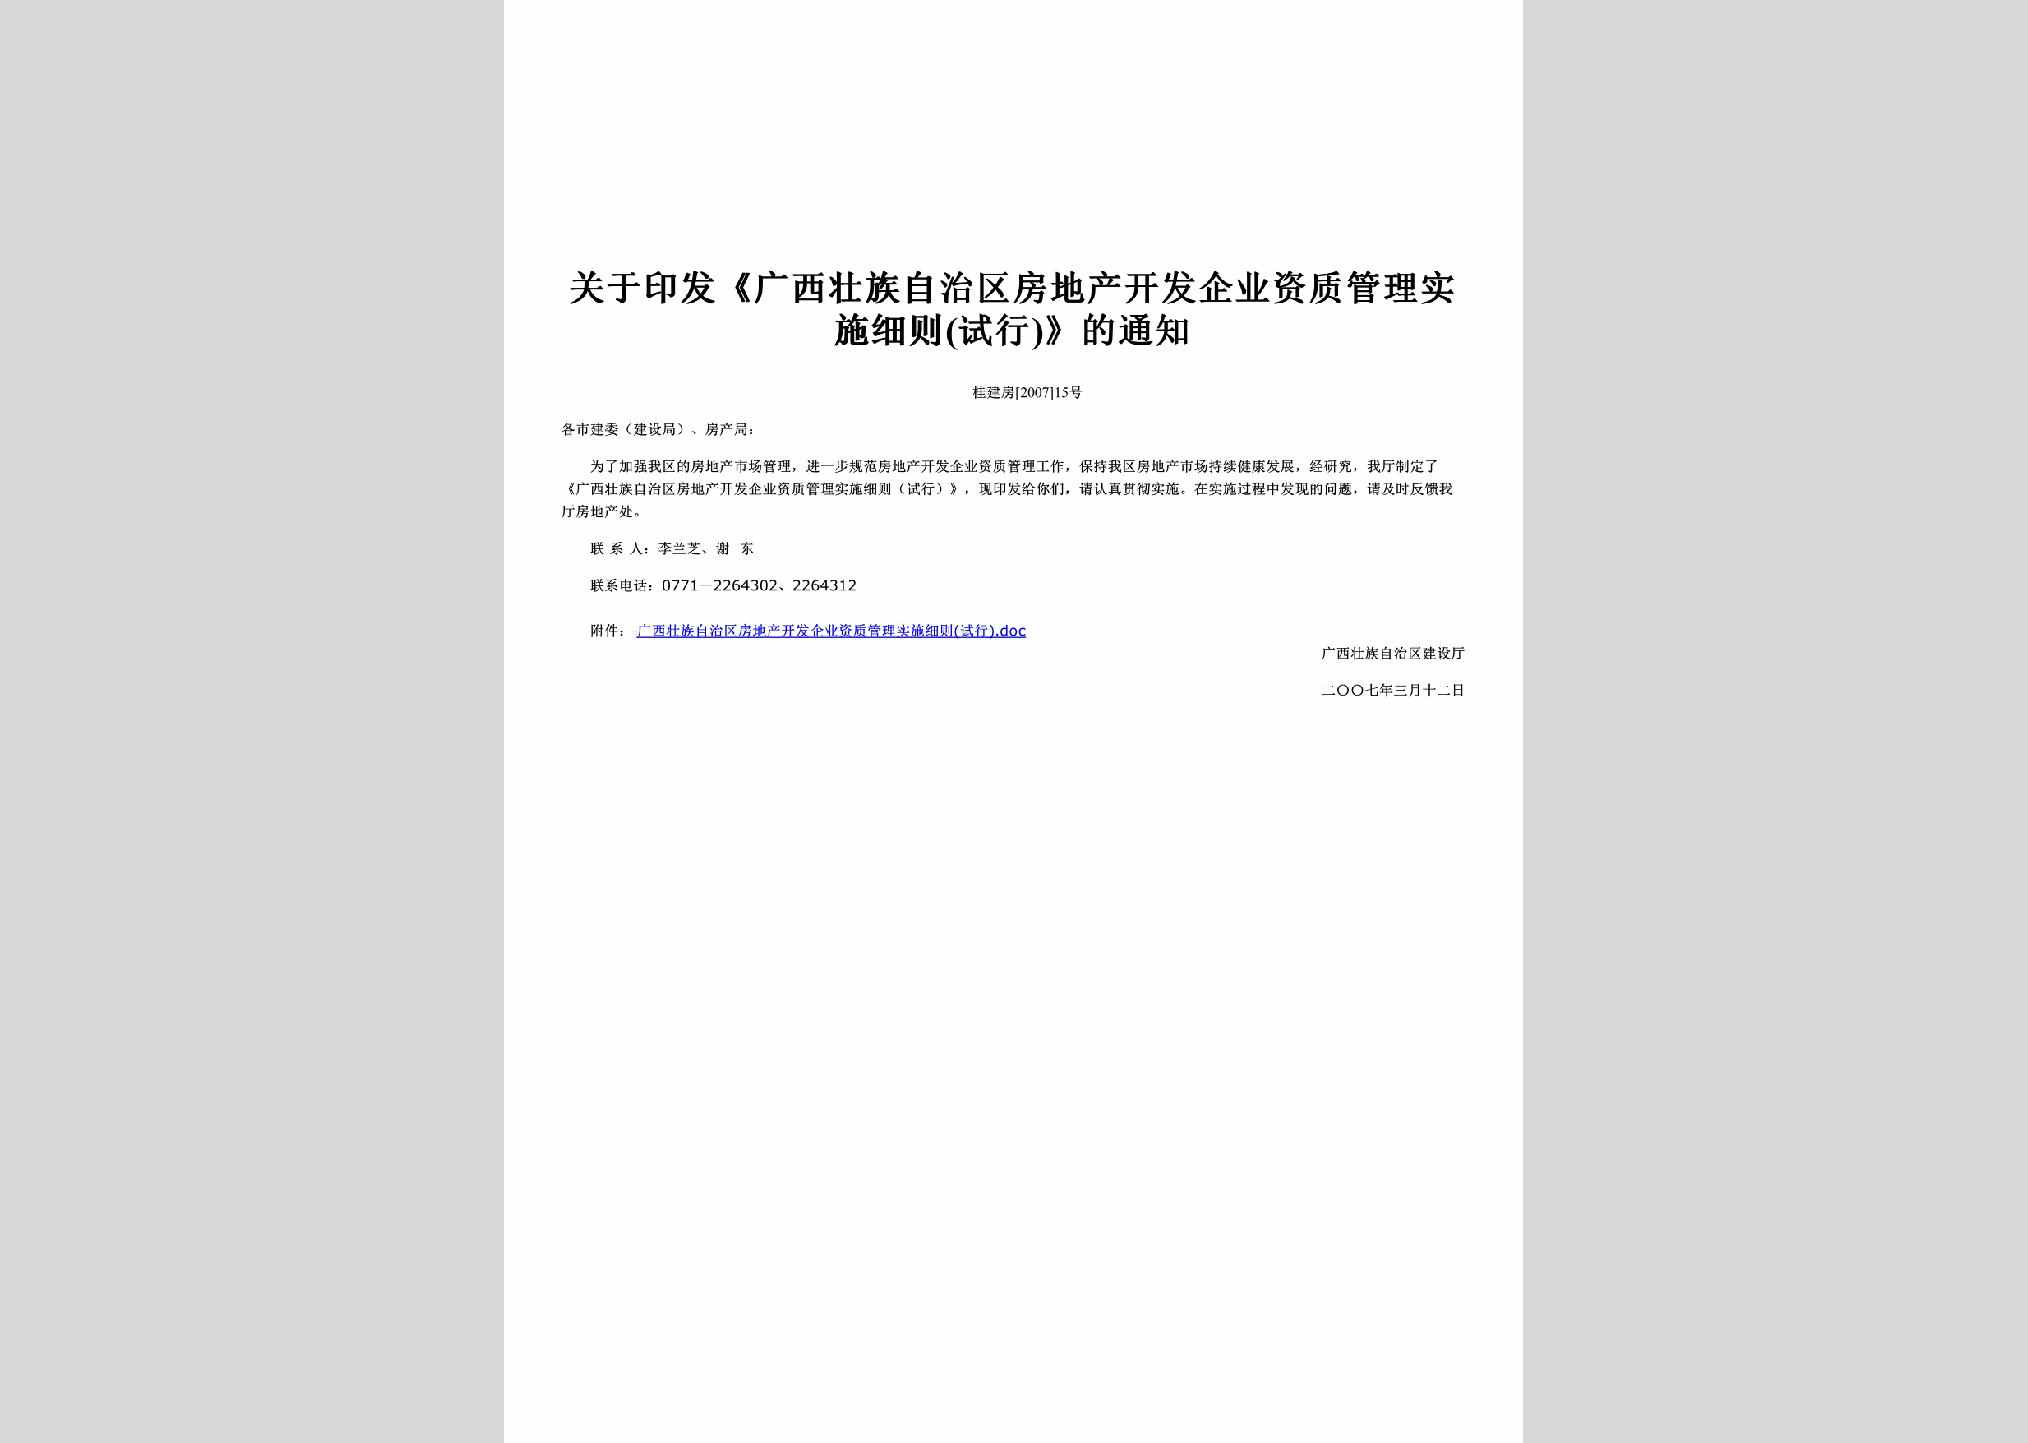 桂建房[2007]15号：关于印发《广西壮族自治区房地产开发企业资质管理实施细则(试行)》的通知